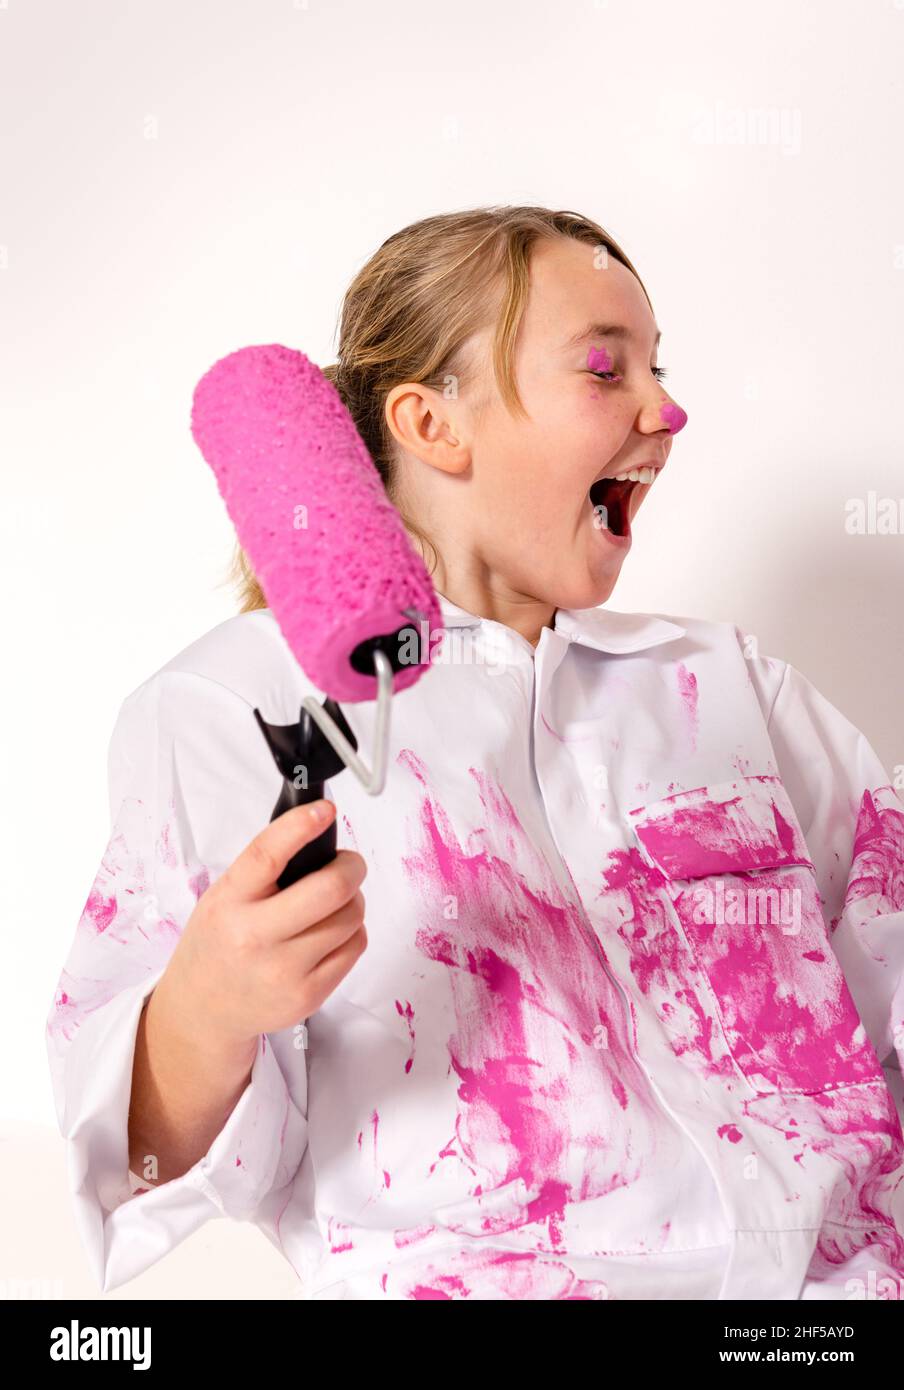 Junges Mädchen mit einer mit rosa Farbe gefüllten Walze. Sie hat Farbe auf ihrem Augenlid und lacht glücklich. Stockfoto